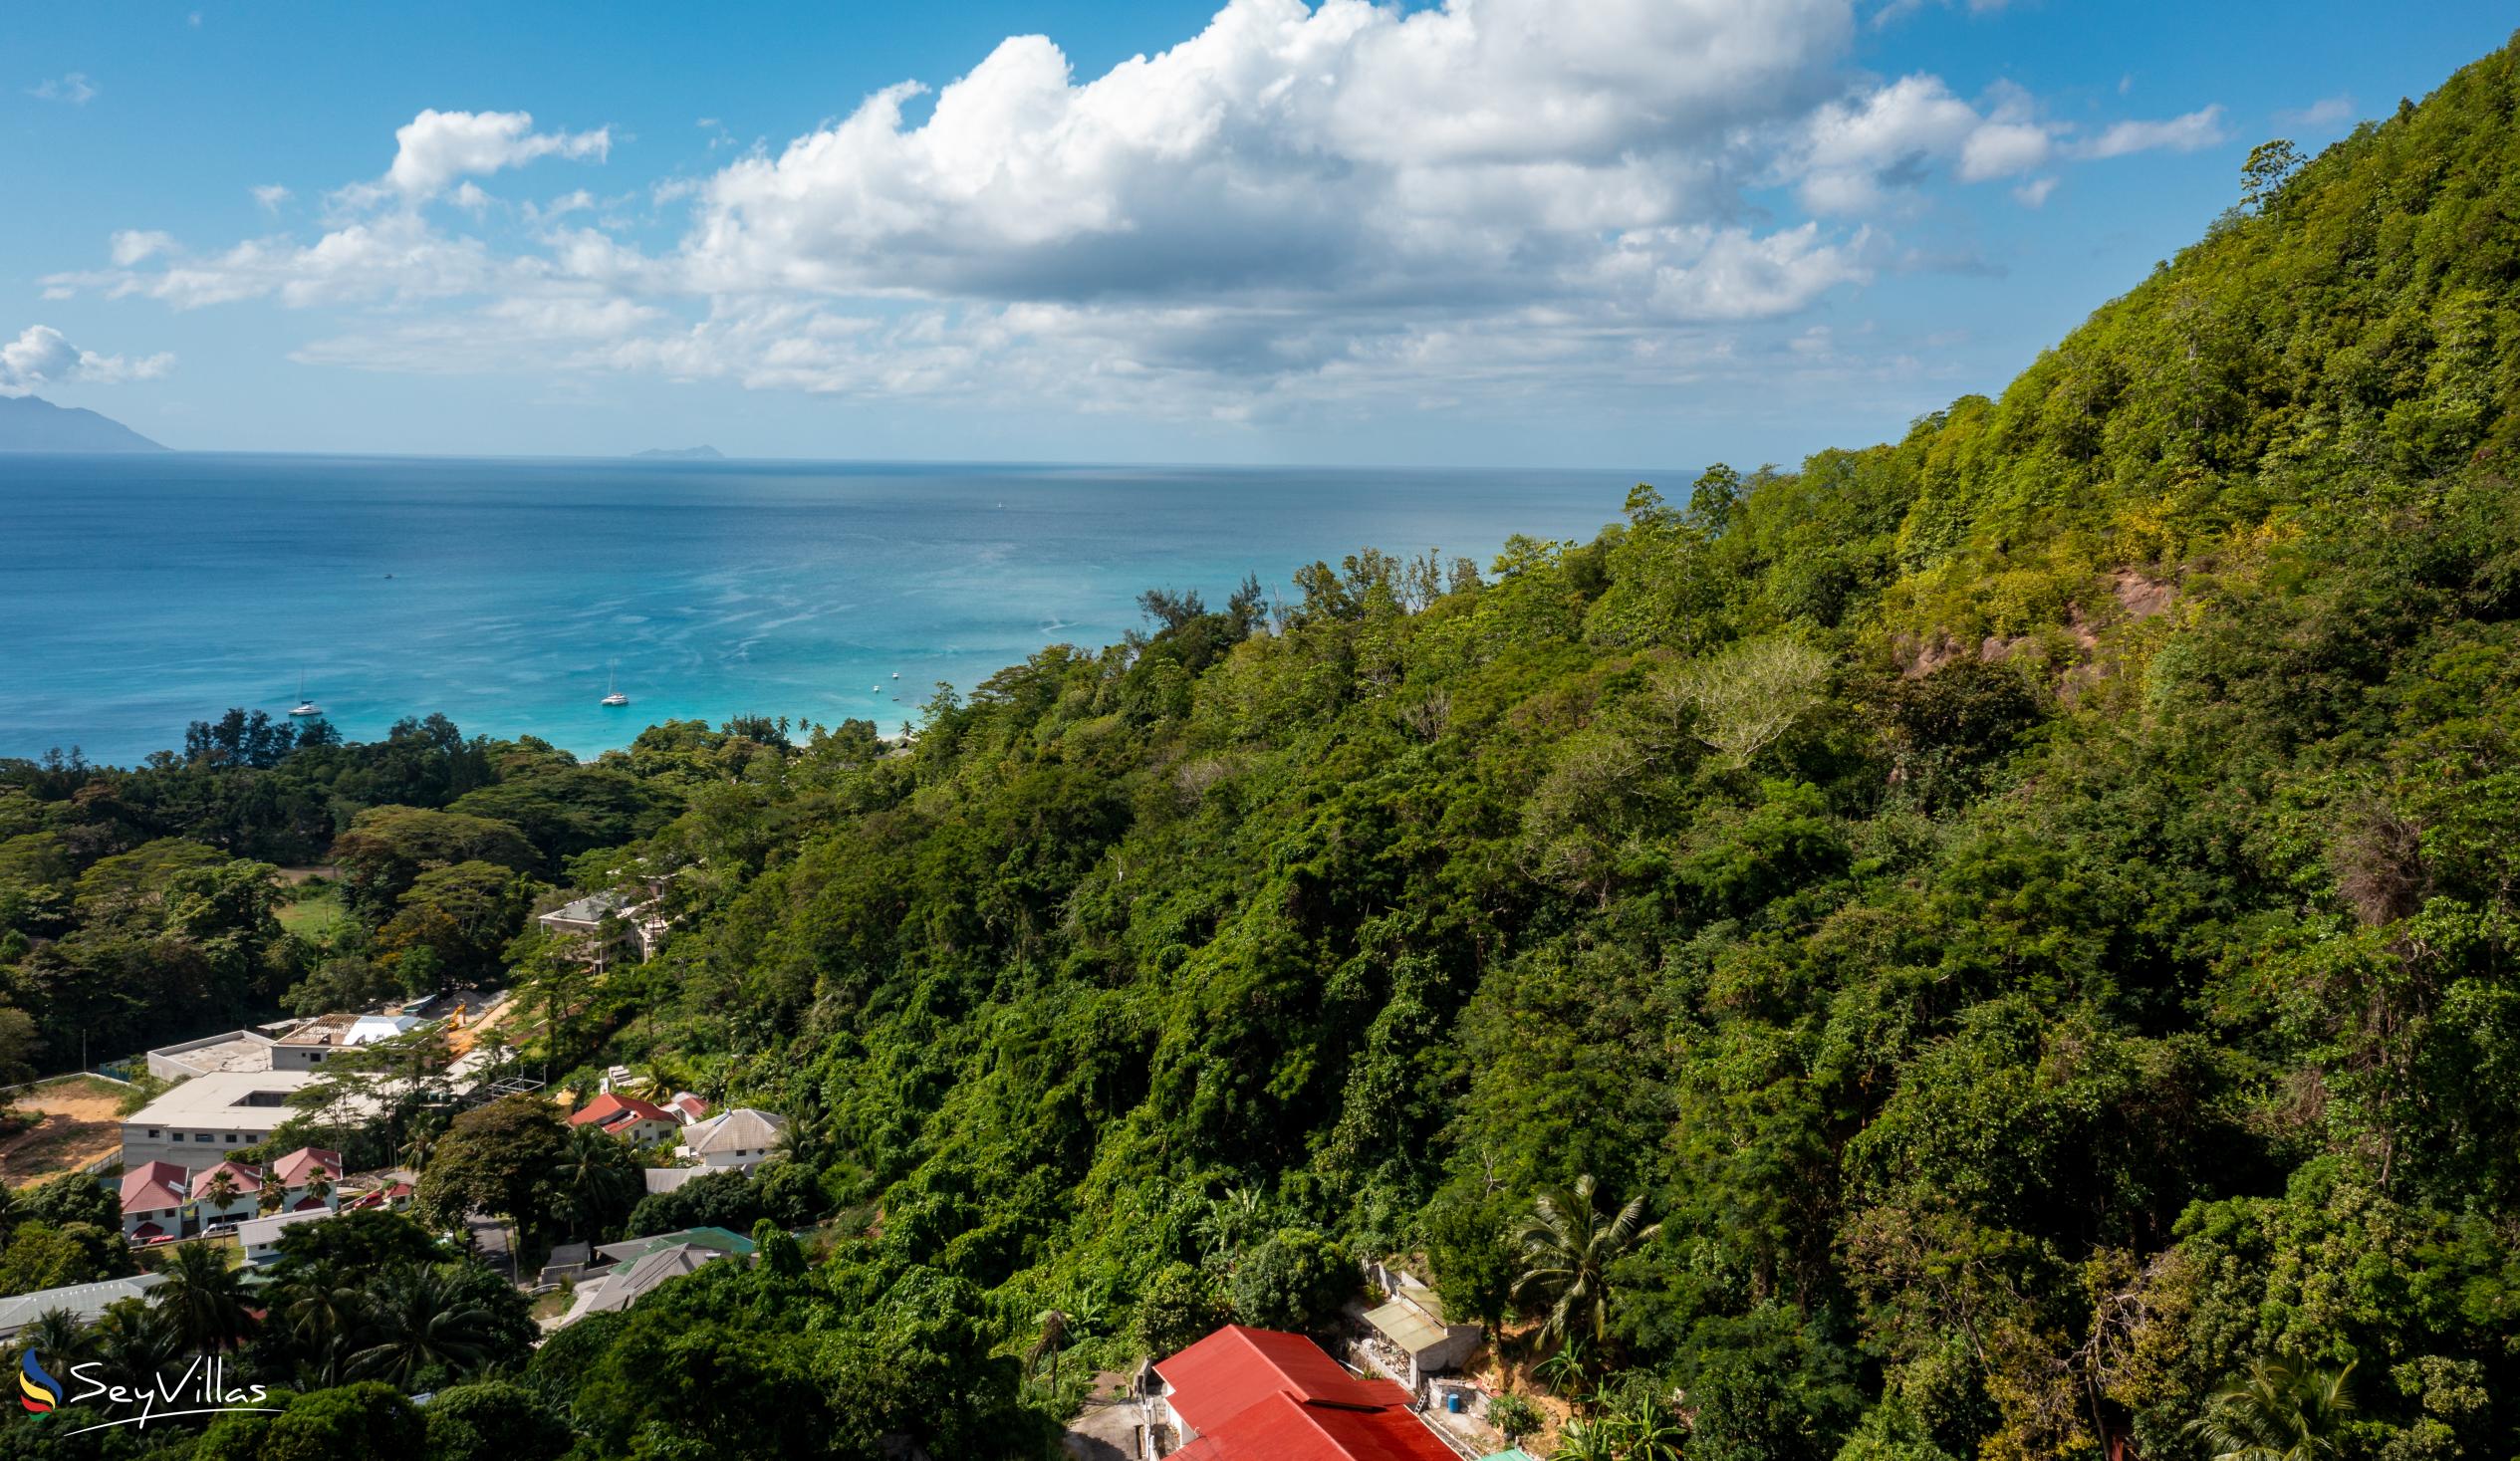 Foto 23: Roz Avel Villa - Posizione - Mahé (Seychelles)